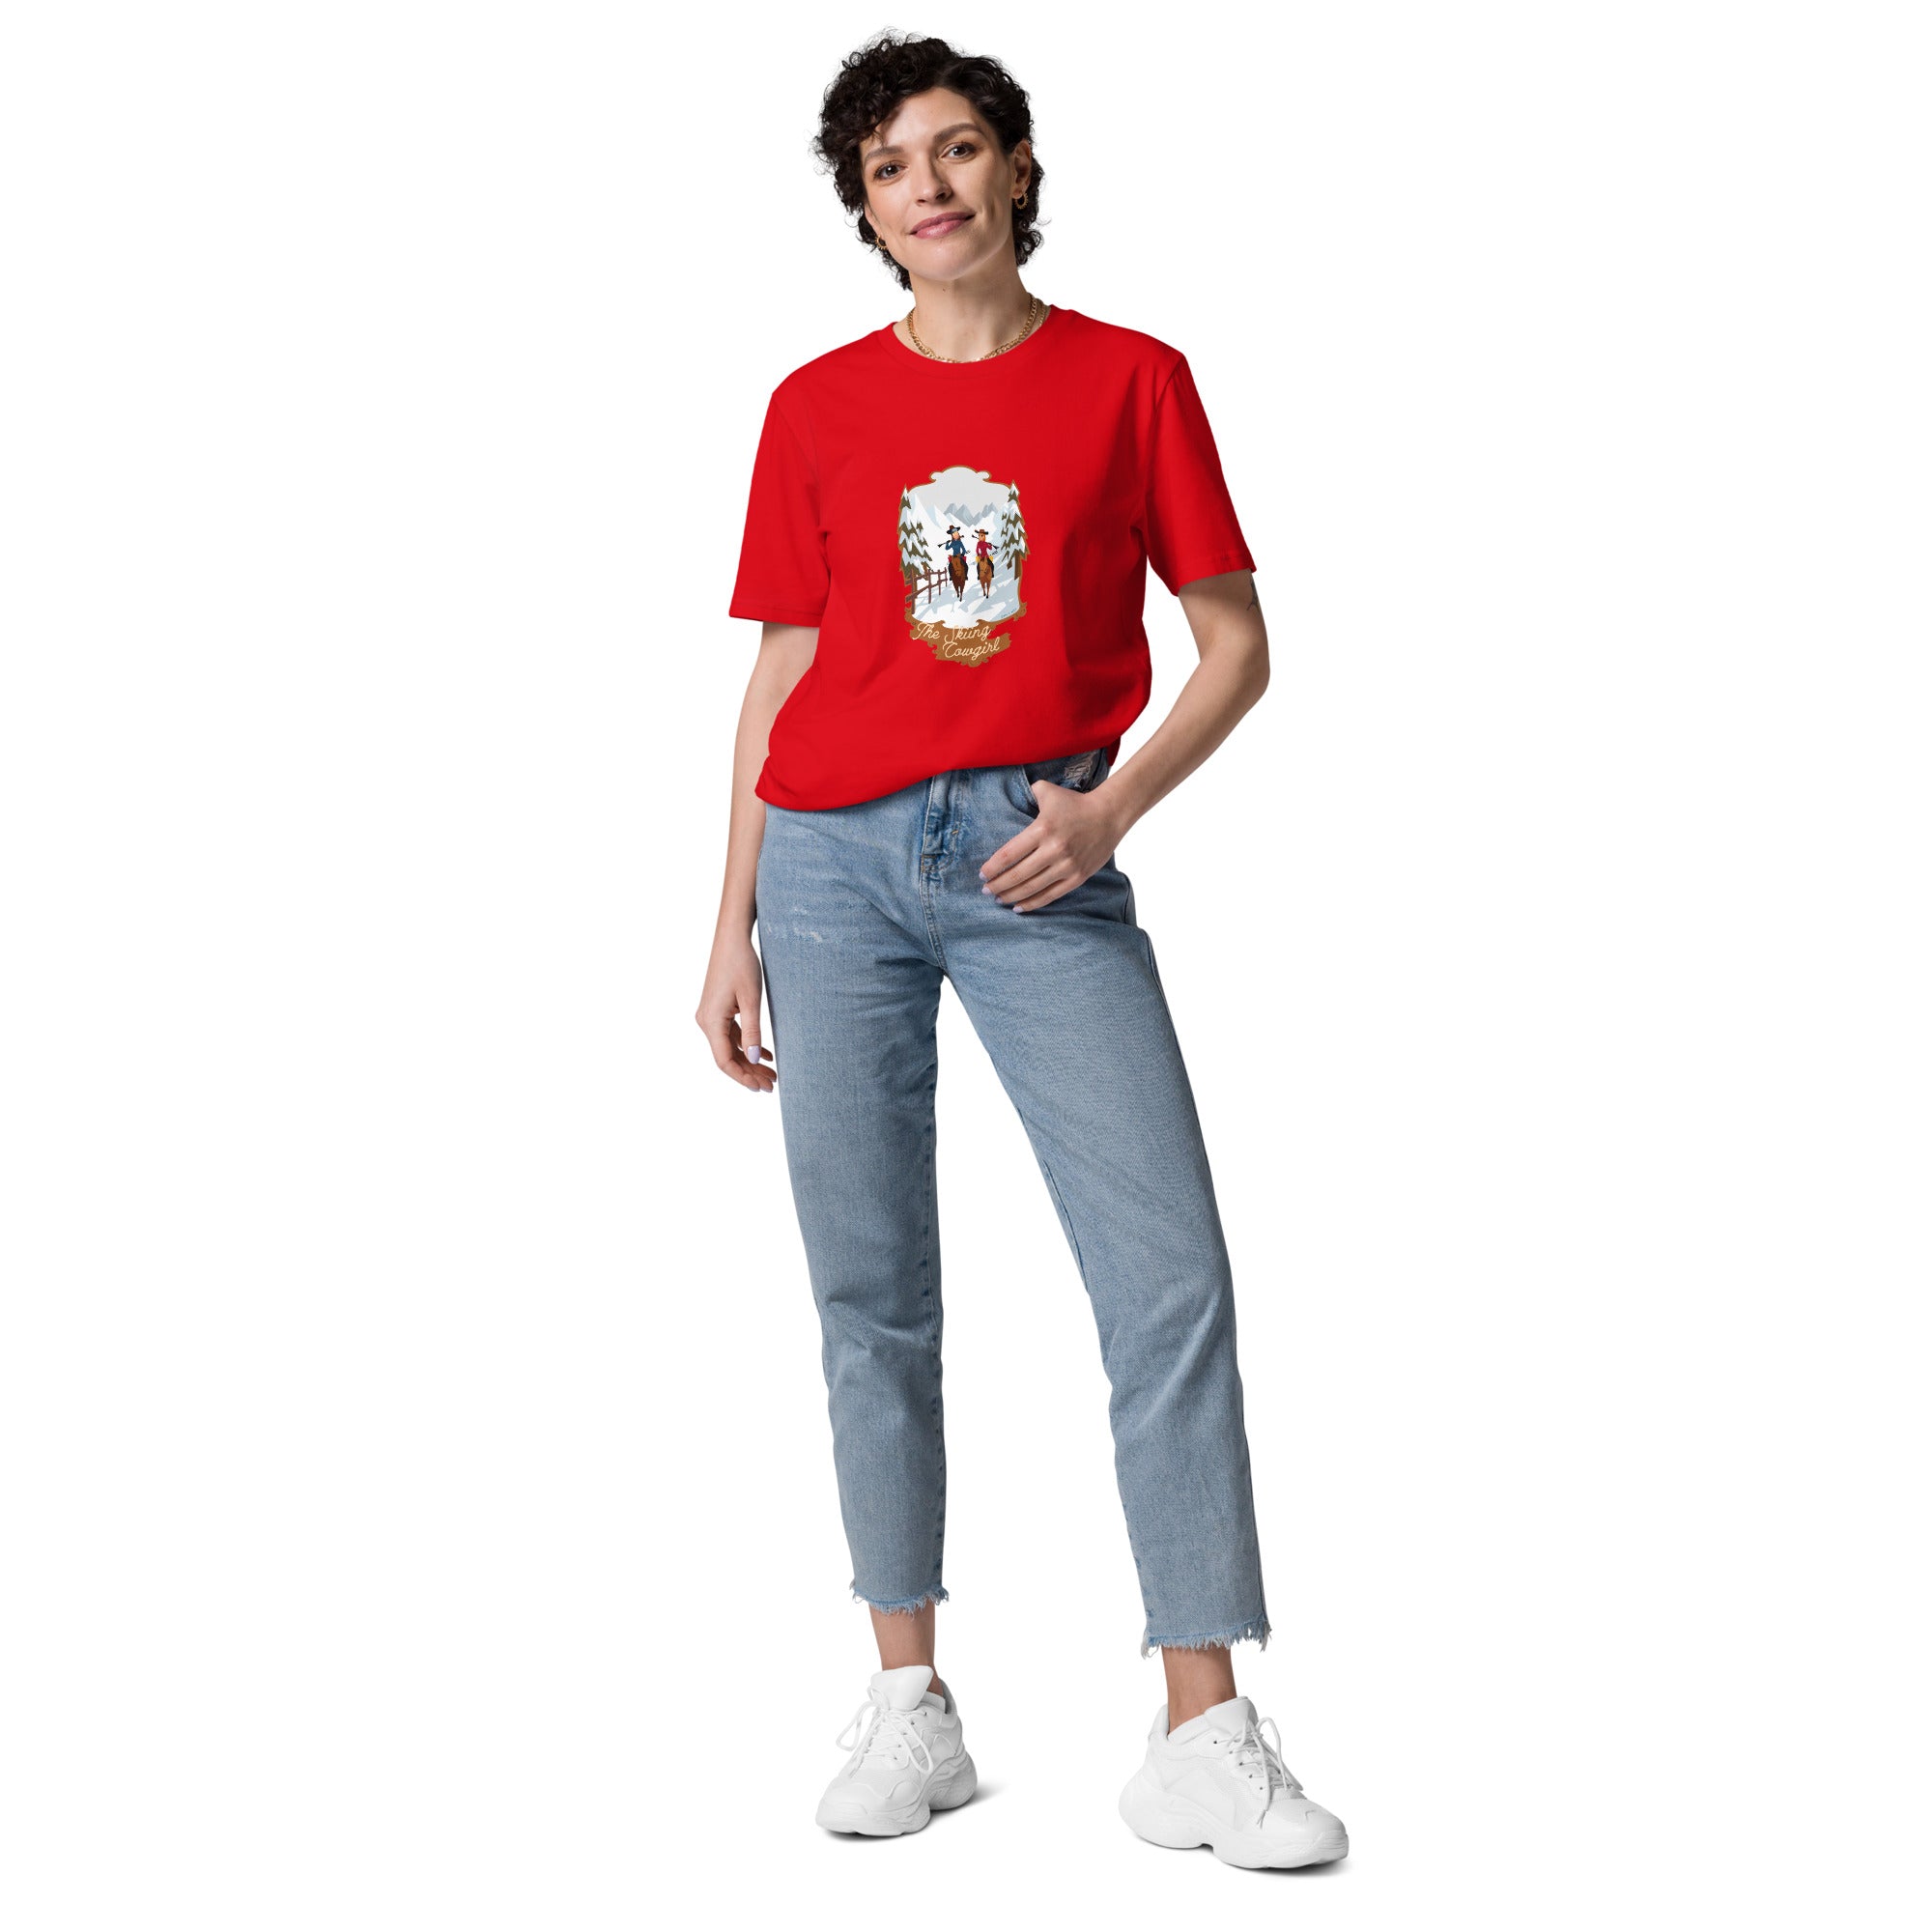 T-shirt unisexe en coton biologique The Skiing Cowgirl sur couleurs vives